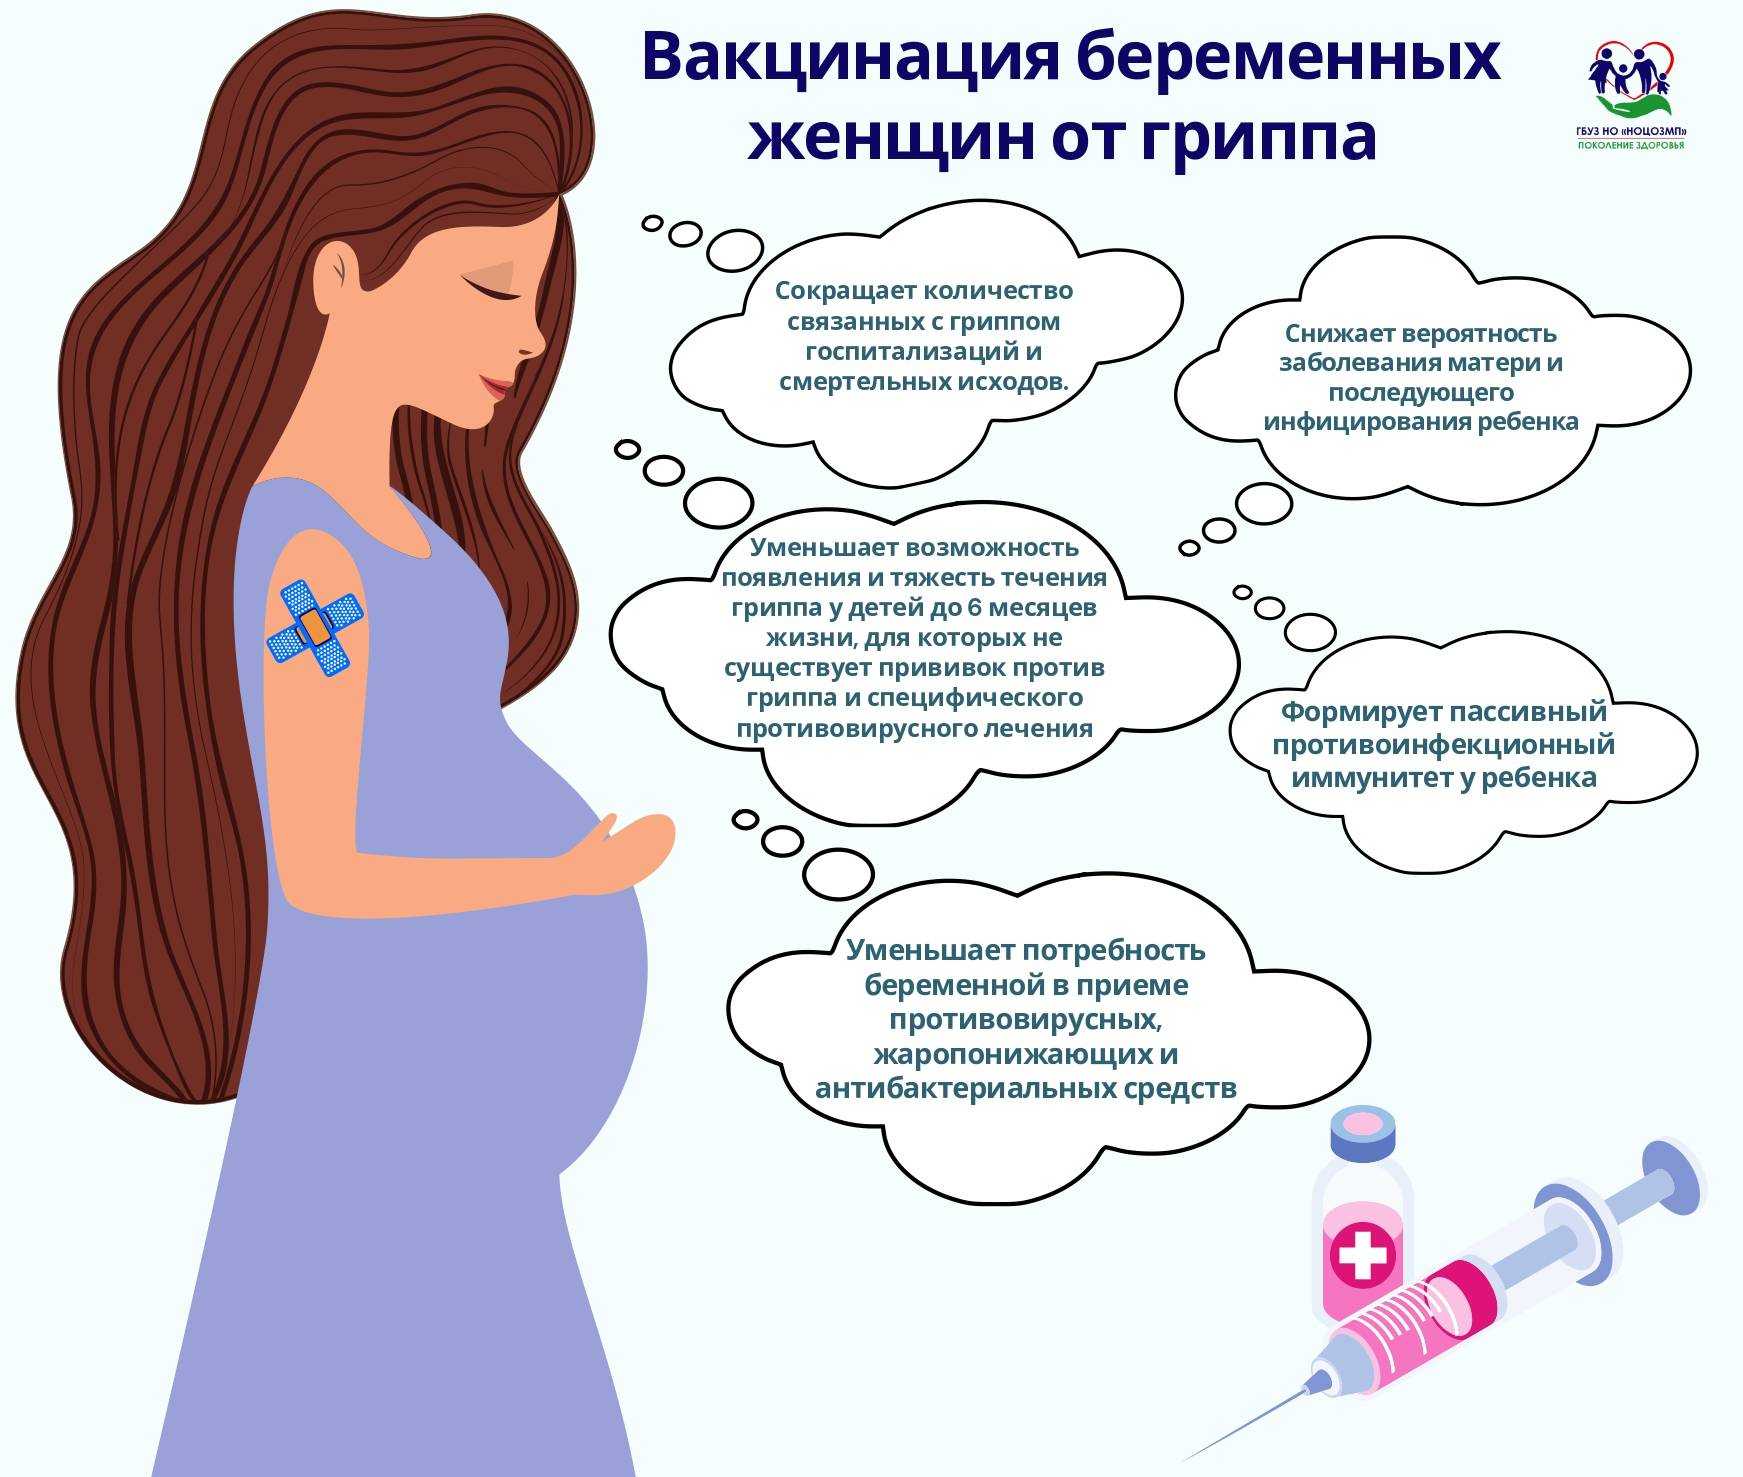 Вакцинация беременных. Вакцинация беременной памятка. Памятка для переменных. Памятка для беременных женщин. Беременности после орви